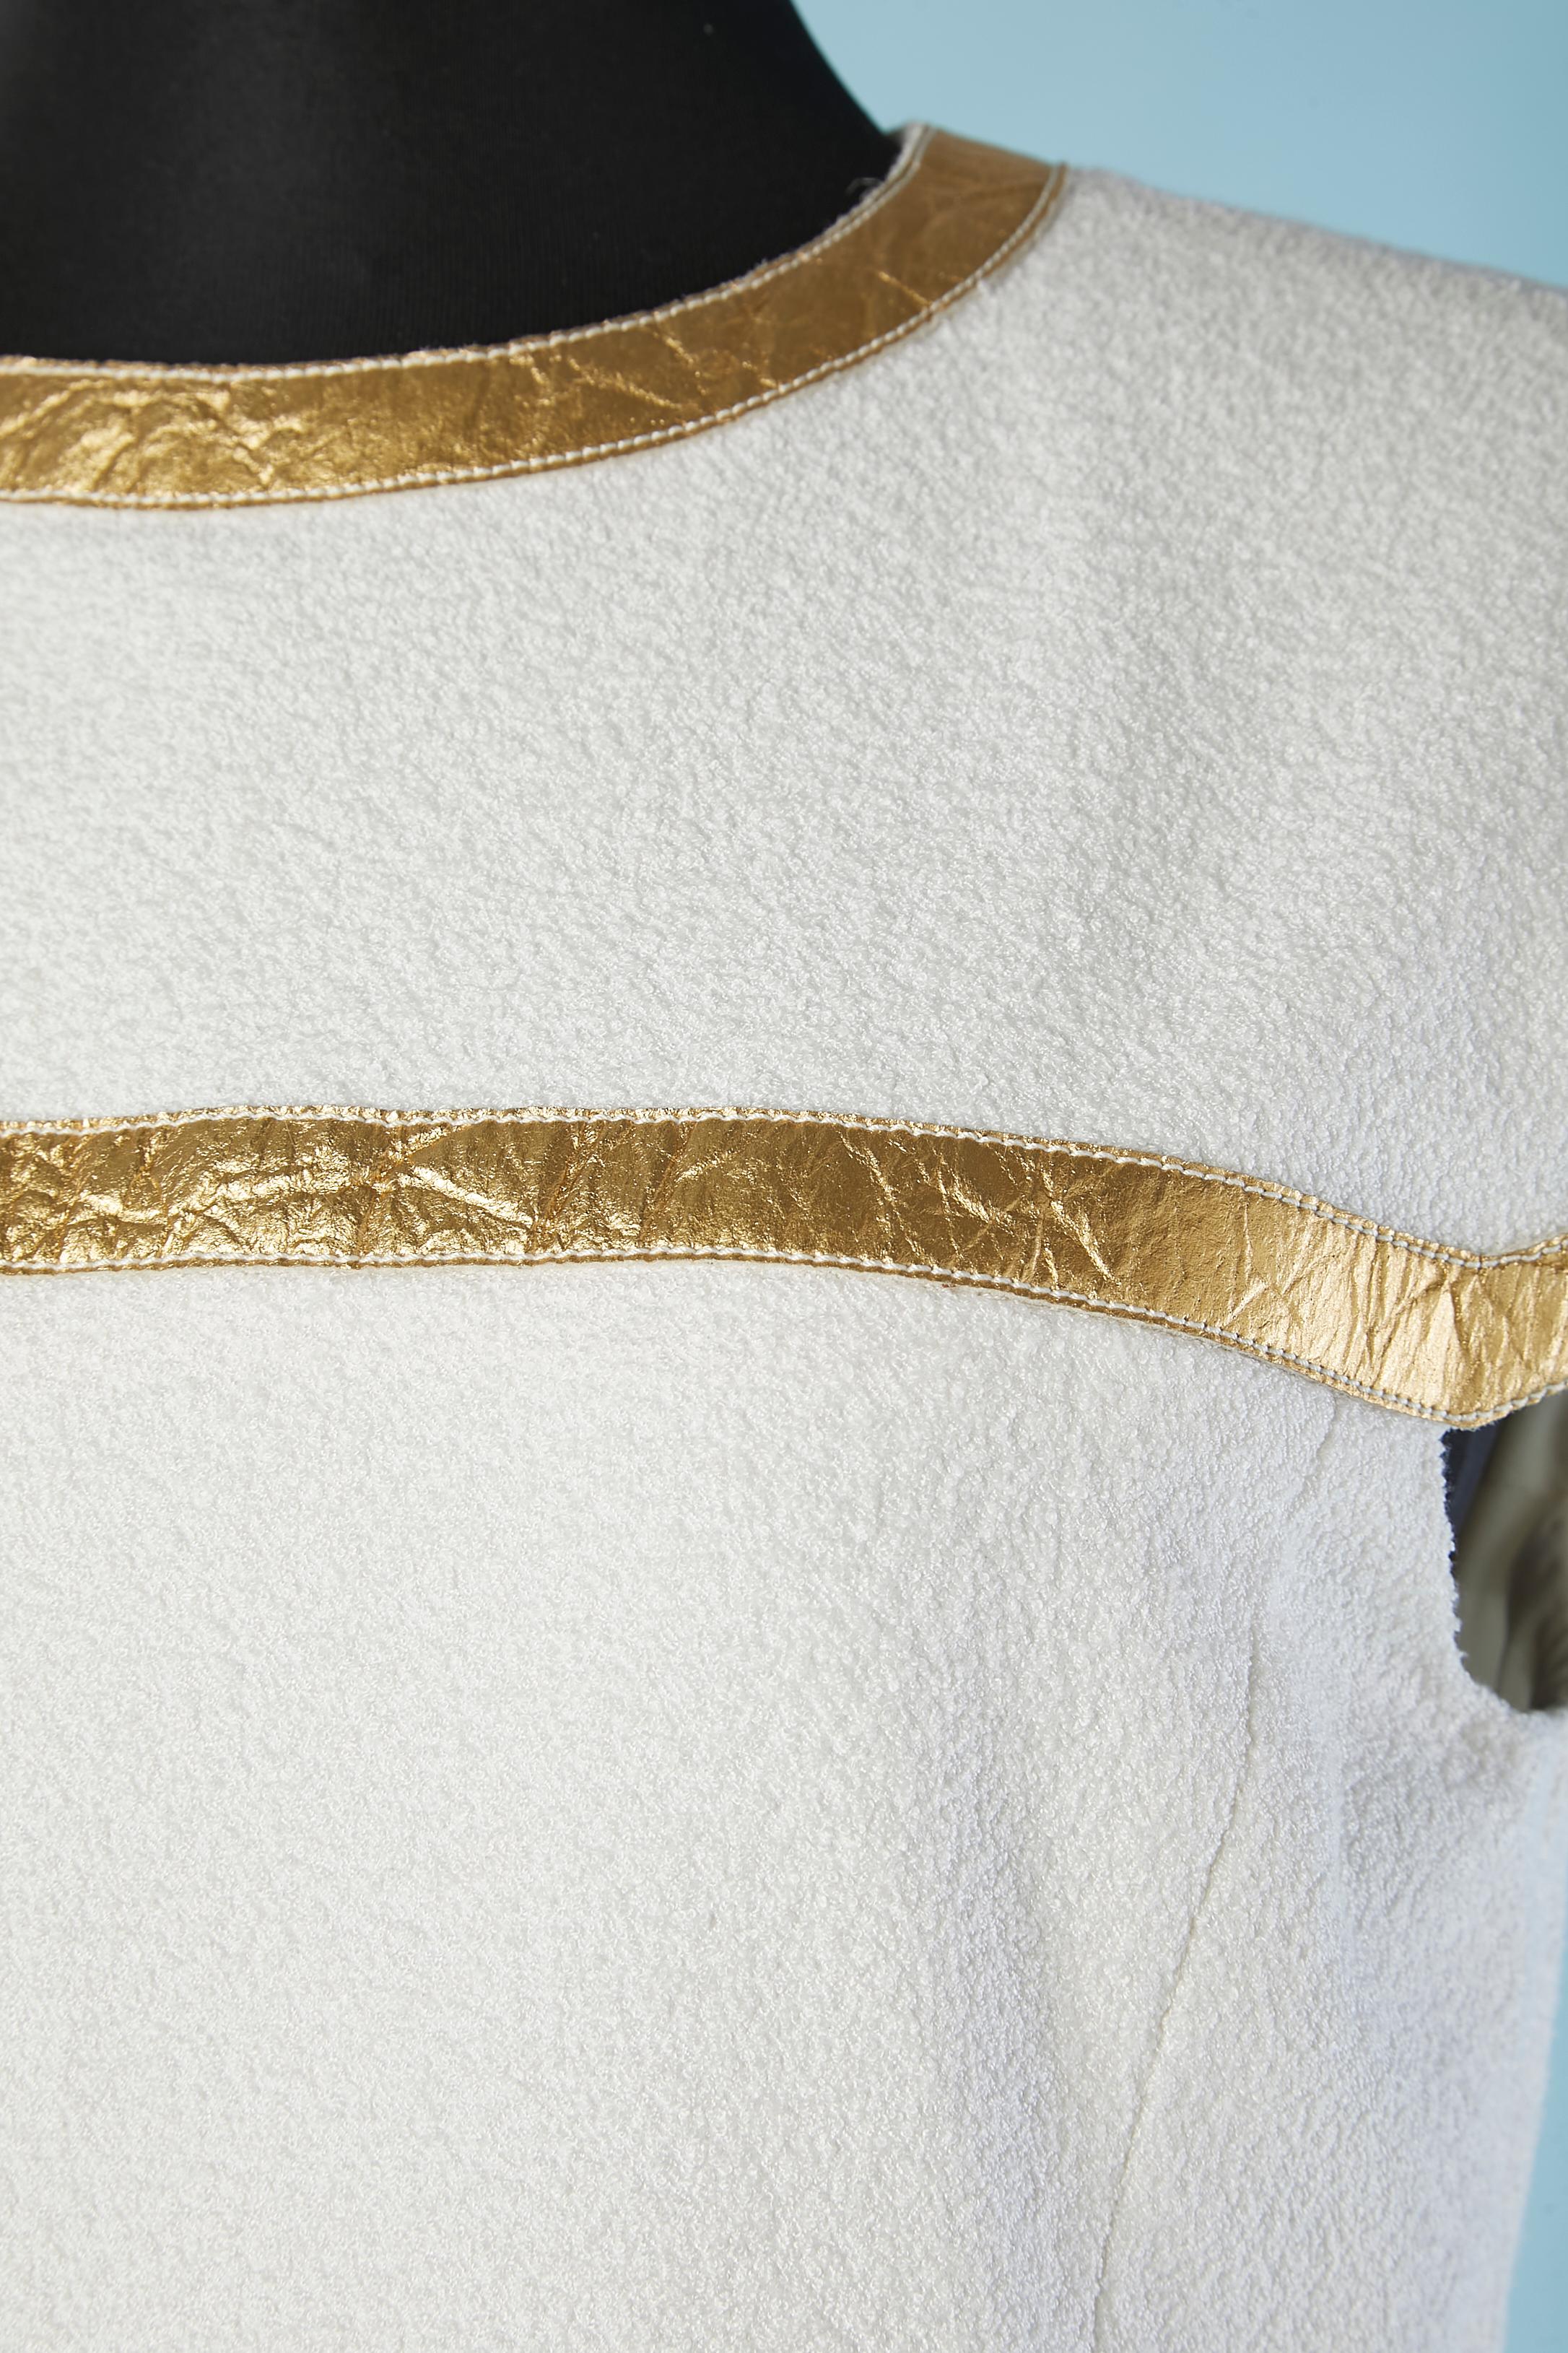 Robe de cocktail blanche avec application de ruban doré. Epaulettes et manches raglan. Enroulement sur la partie jupe. Boutons décoratifs en forme de scarabée de la marque. Composition du tissu : 50% soie, 32% coton, 16% polyamide, 2% élasthanne.